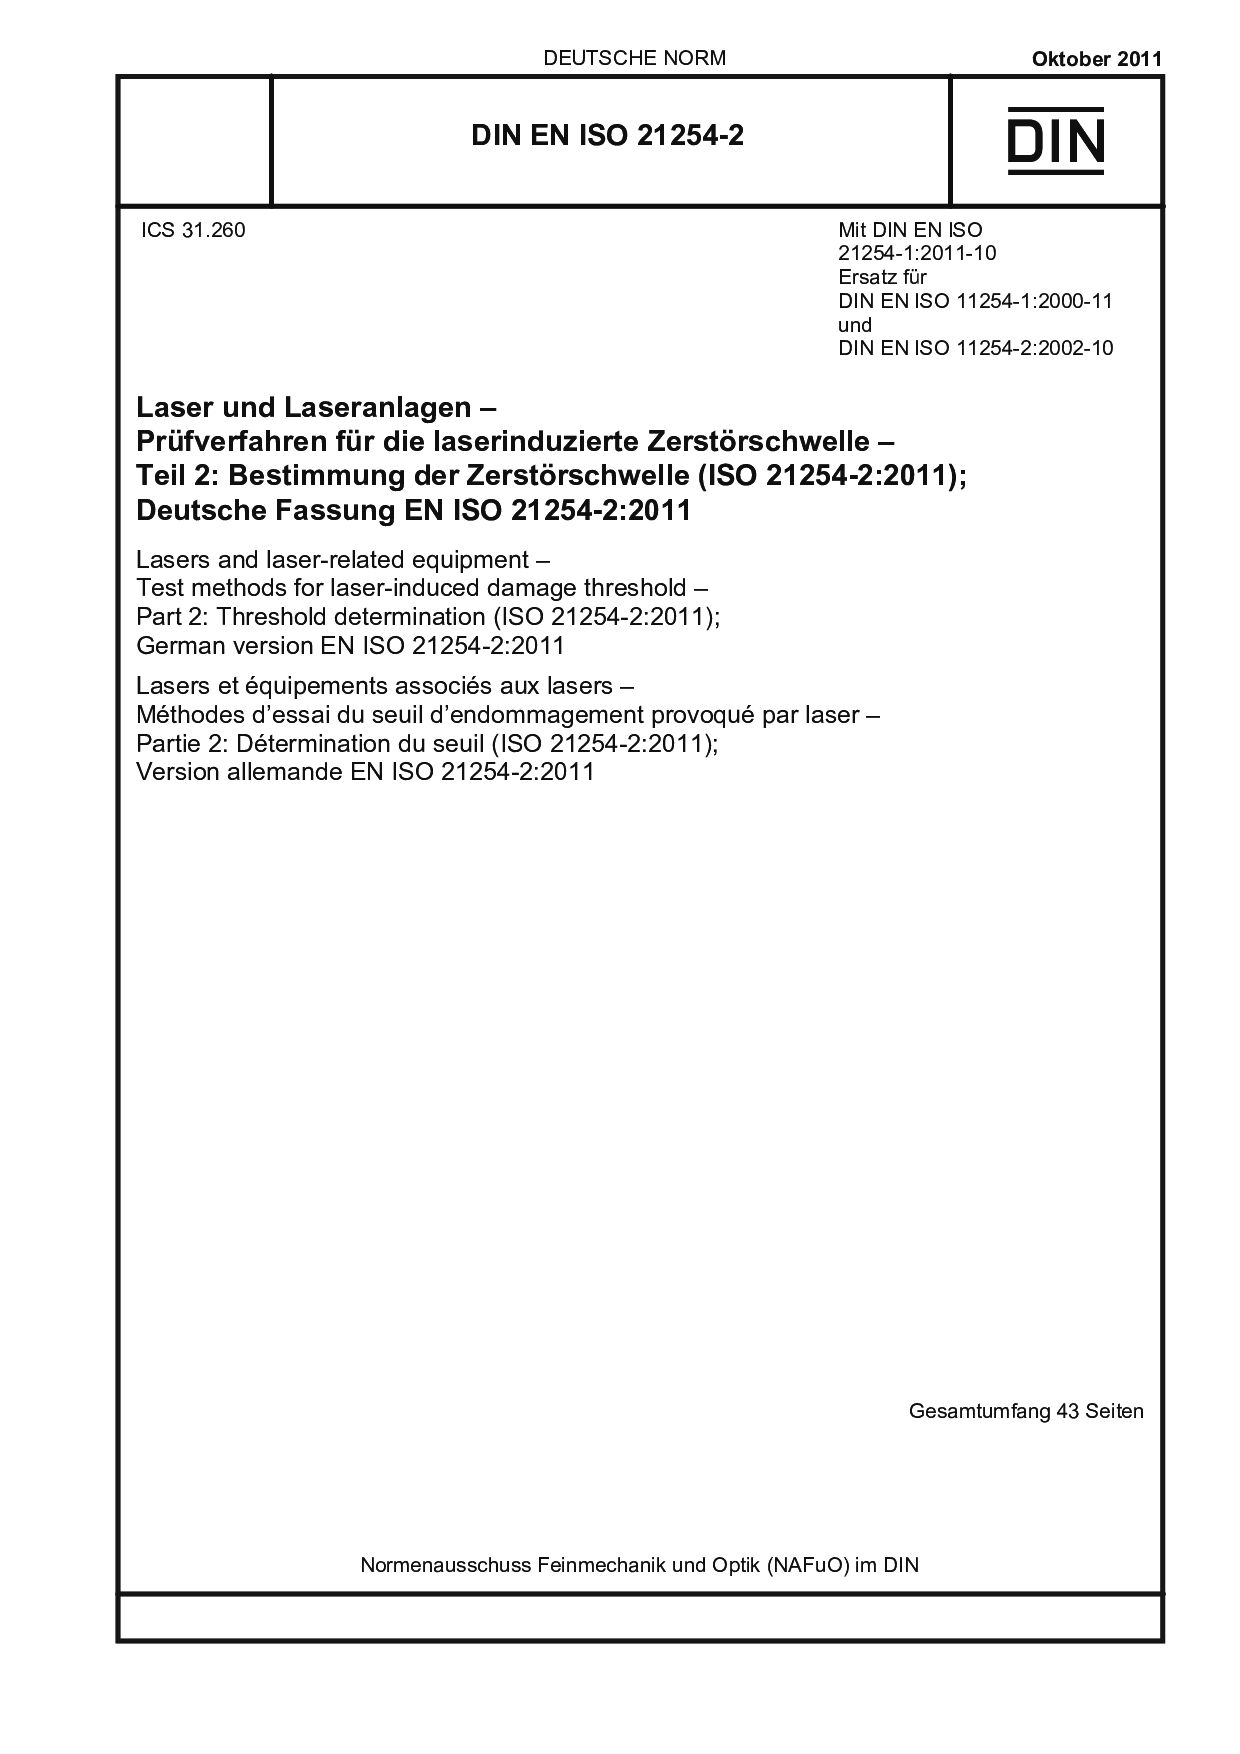 DIN EN ISO 21254-2:2011封面图